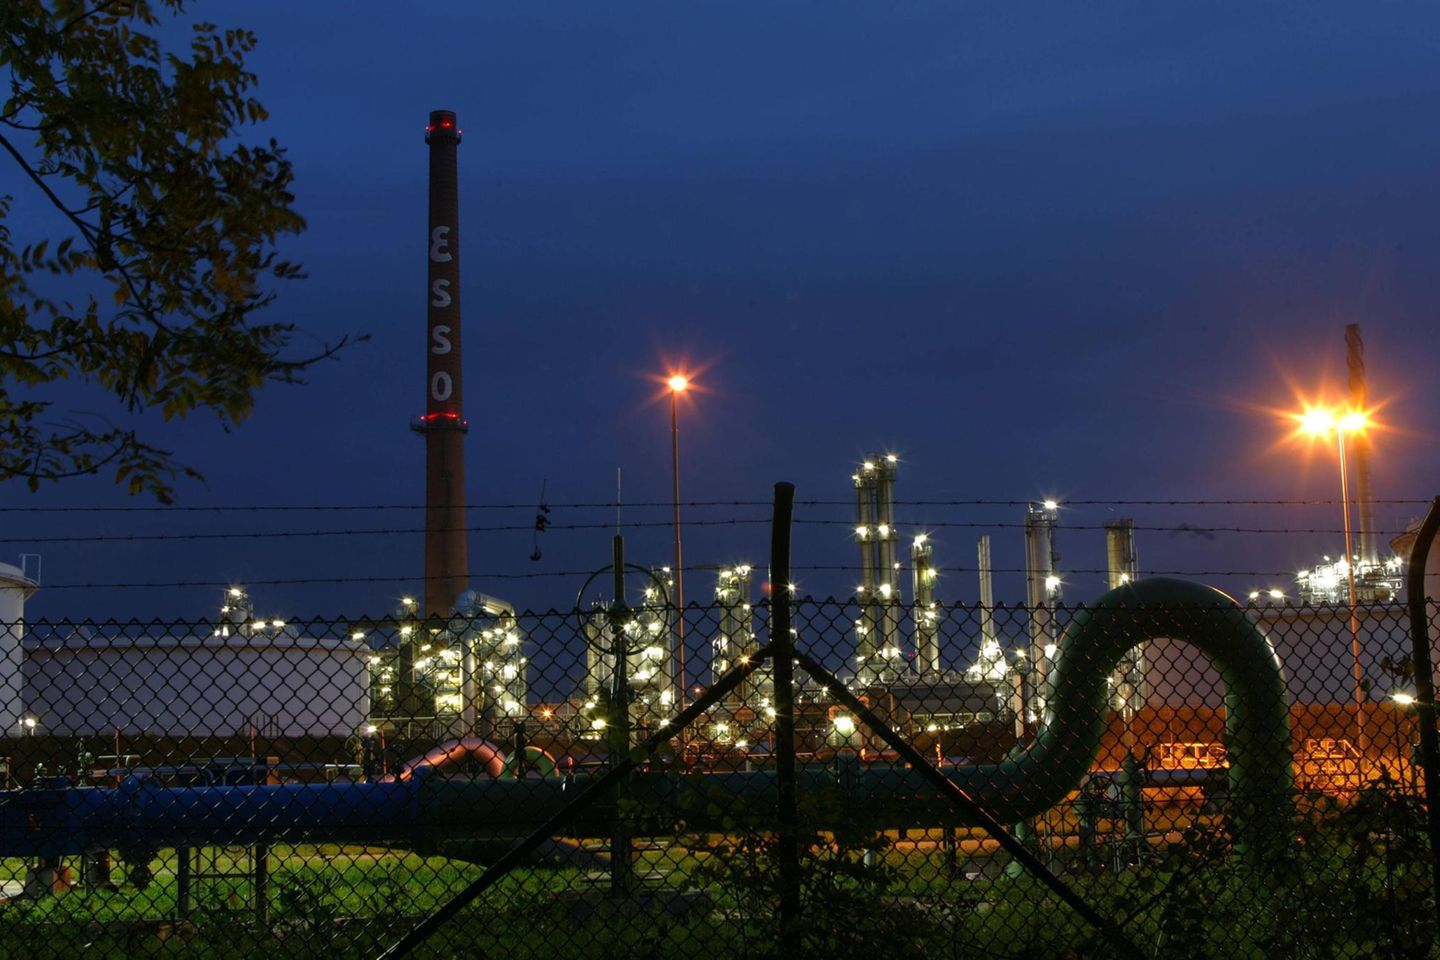 Esso gehört dem US-amerikanischen Mineralölunternehmen Exxon Mobil. Unter dem Namen „Esso“ gibt es jedoch zwei Beteiligungen an Raffinerien: Auf dem Foto ist der Standort Ingolstadt zu sehen, der Esso ganz gehört. Zudem halten die US-Amerikaner 25 Prozent am Standort Karlsruhe. Insgesamt verarbeiten beide Raffinerien 19,9 Millionen Tonnen Rohöl pro Jahr. 